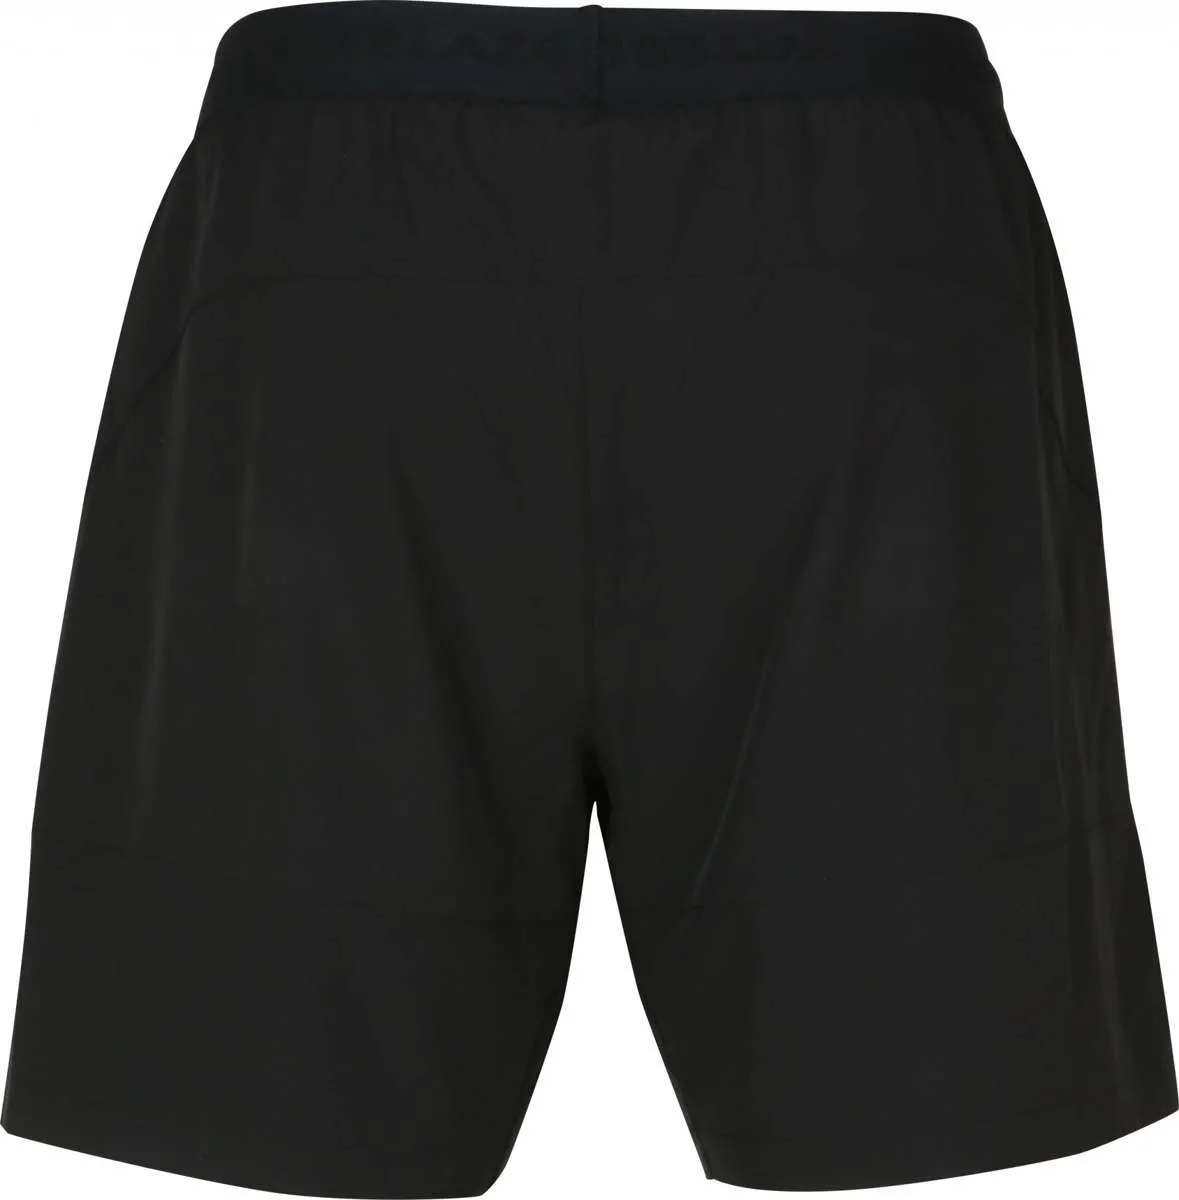 Pantalones cortos de hombre Scotty 2en1 negro